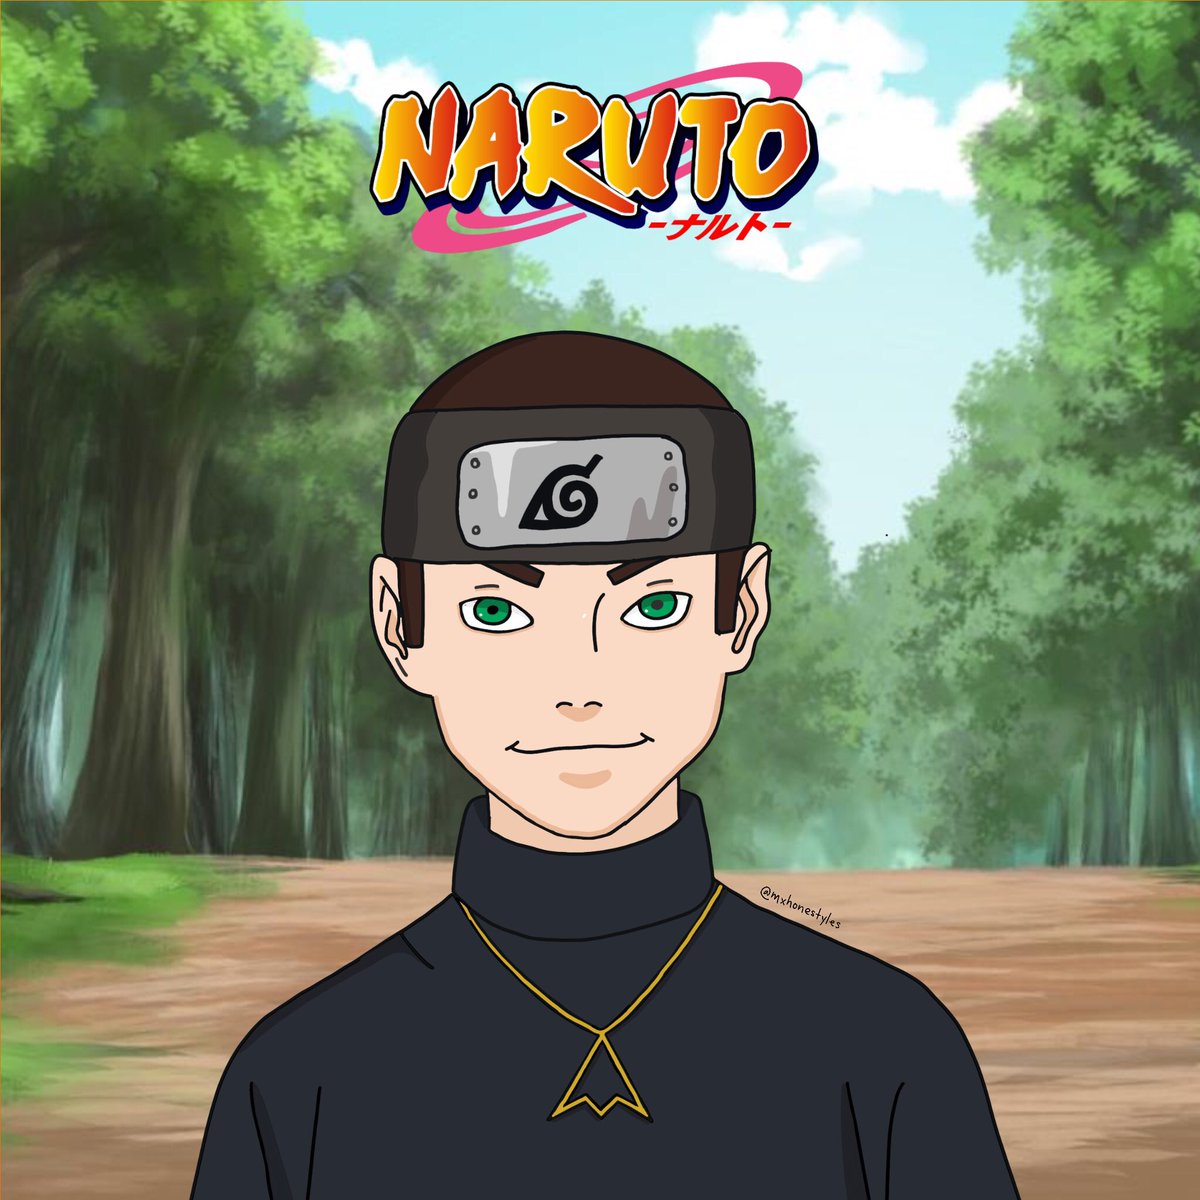 6. Naruto